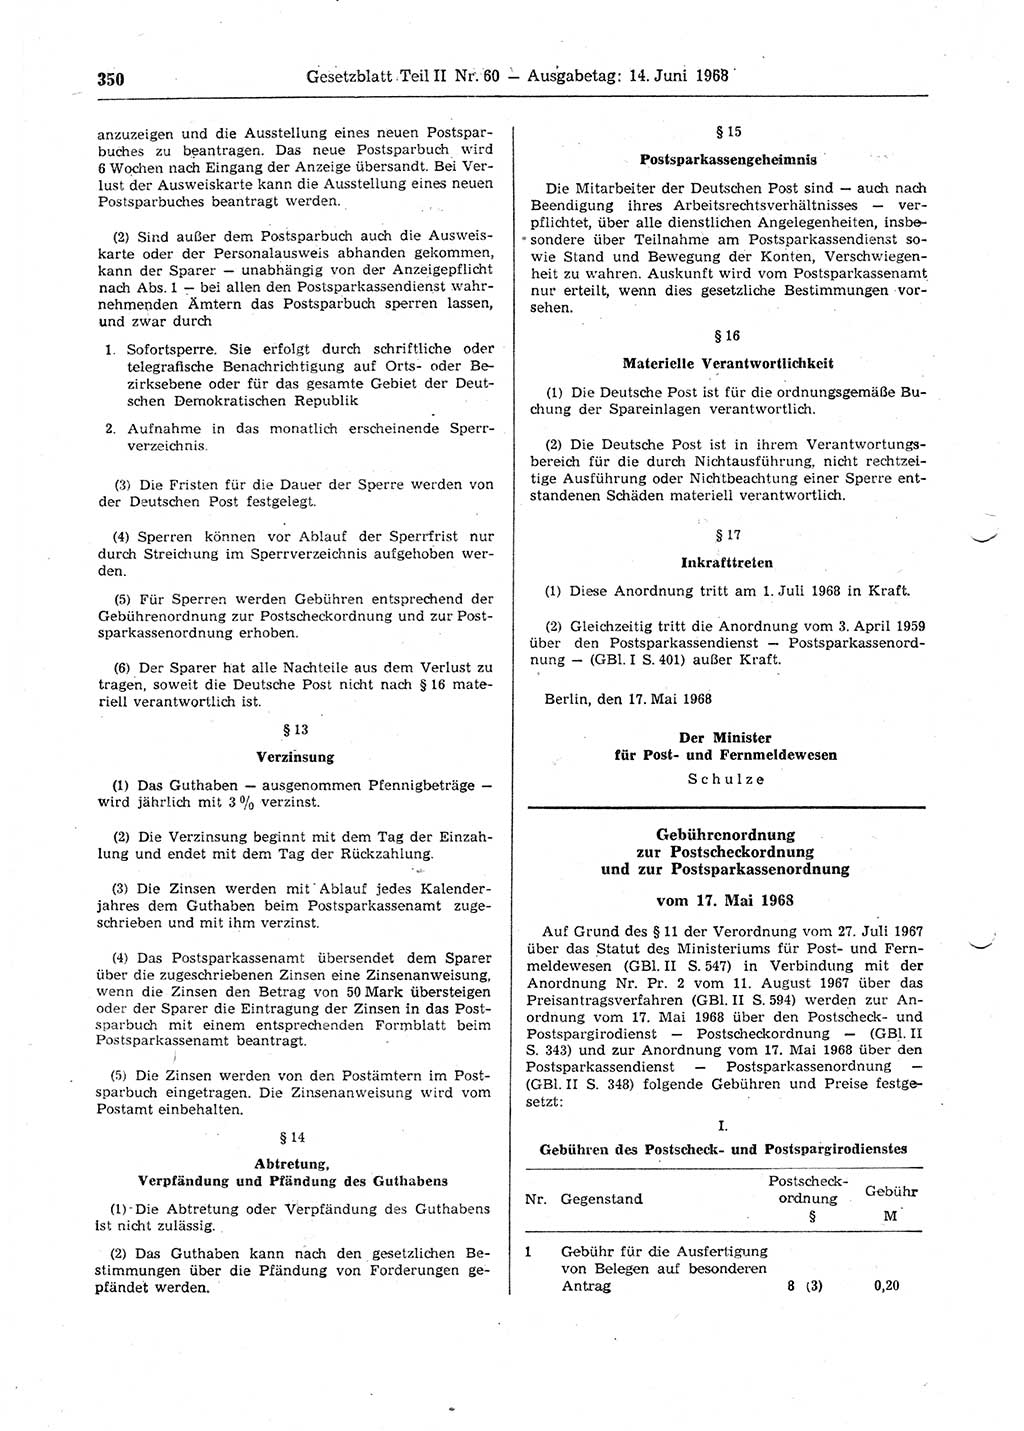 Gesetzblatt (GBl.) der Deutschen Demokratischen Republik (DDR) Teil ⅠⅠ 1968, Seite 350 (GBl. DDR ⅠⅠ 1968, S. 350)